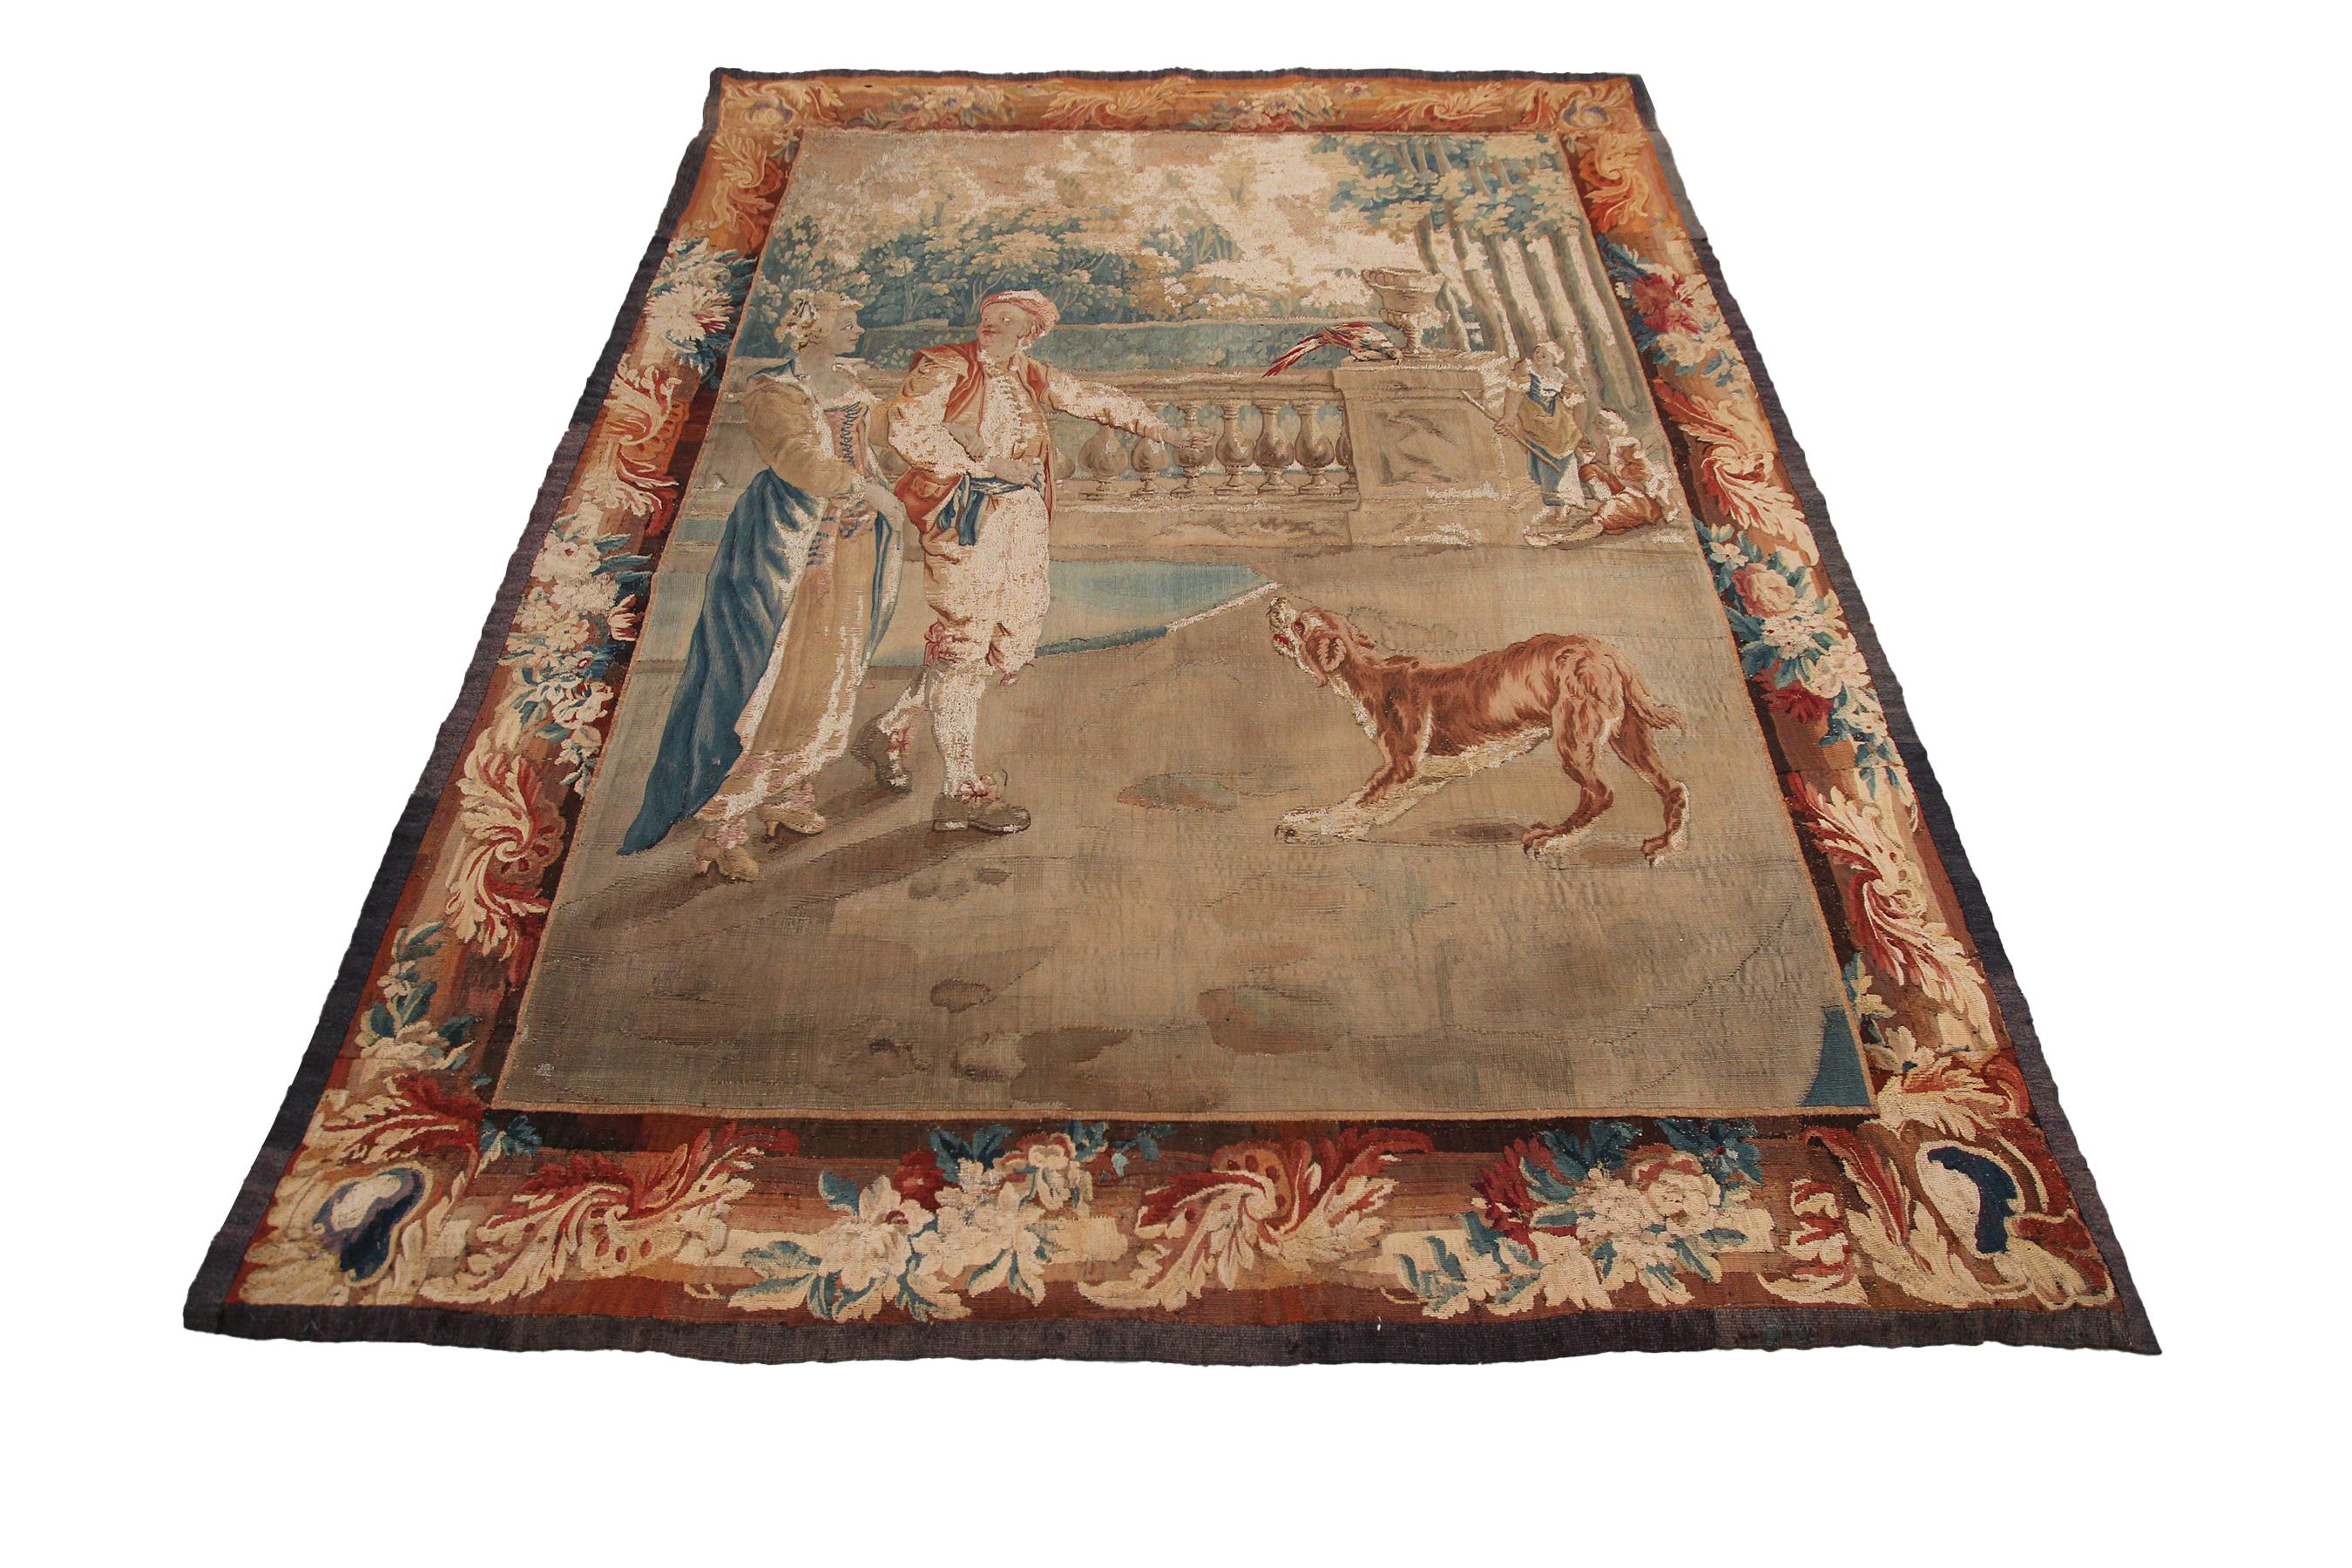 Wandteppich 18. Jahrhundert Antiker flämischer Wandteppich Wolle Seide Verdure 5x6

4'5